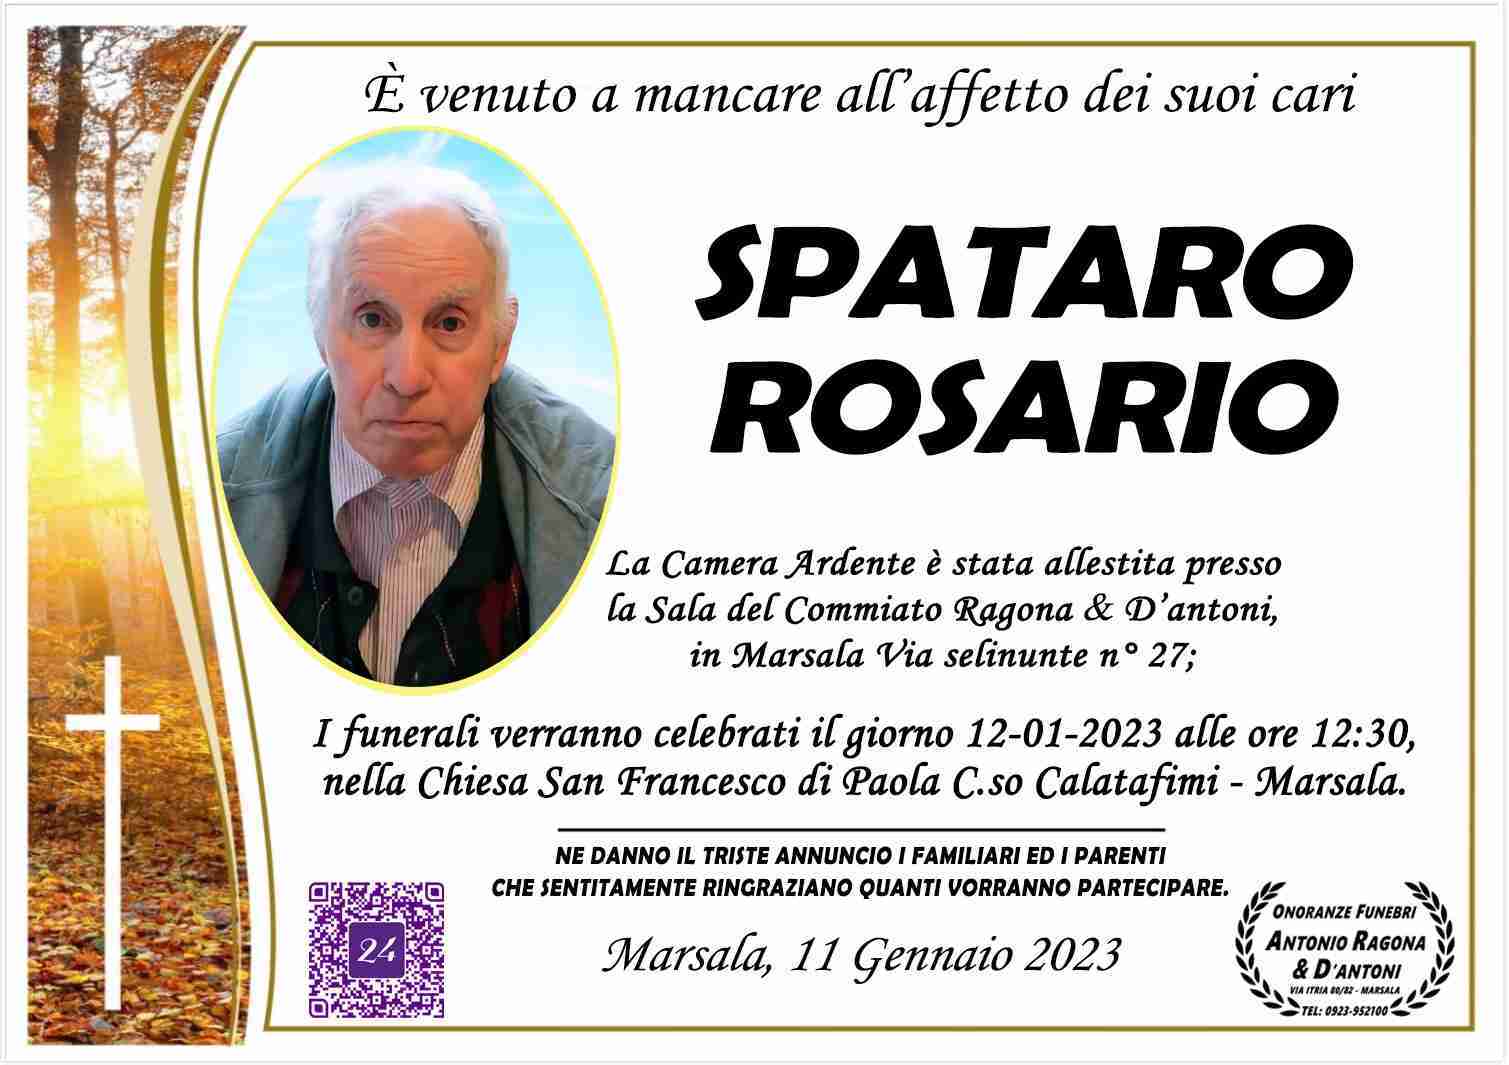 Rosario Spataro